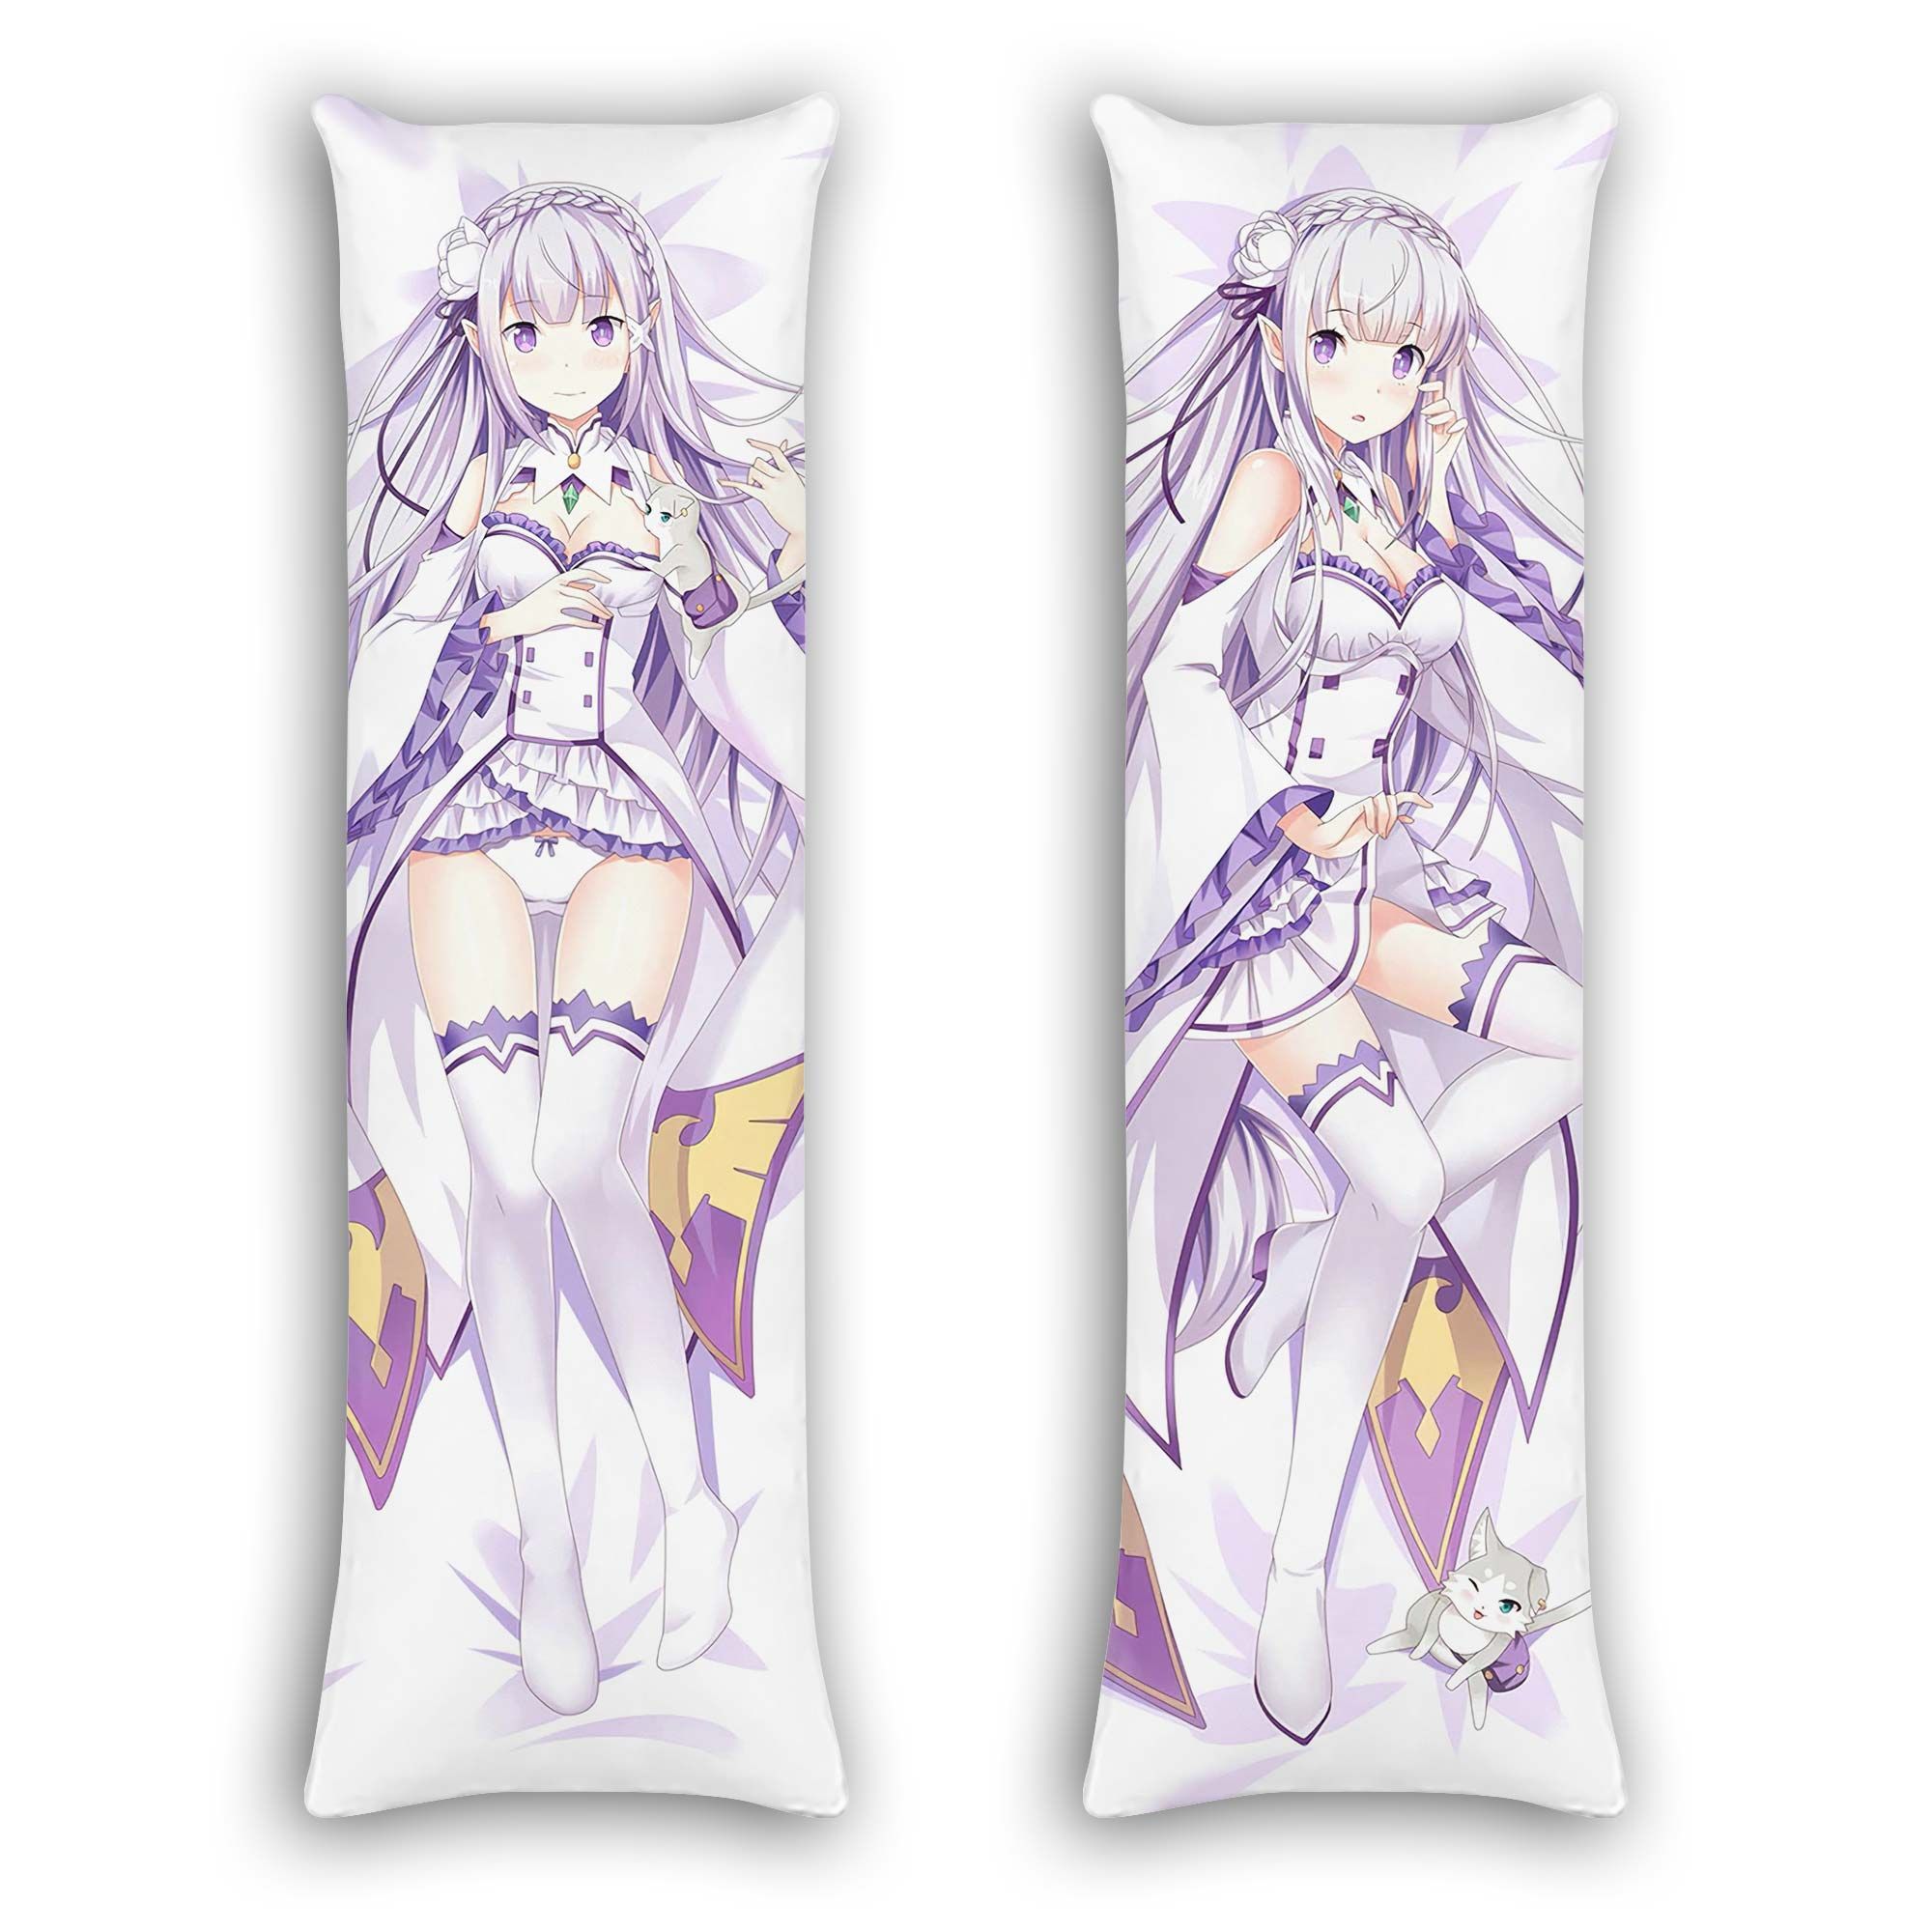 Re Zero Emilia Body Pillow Cover Anime Gifts Idea For Otaku Girl Official Merch GO0110